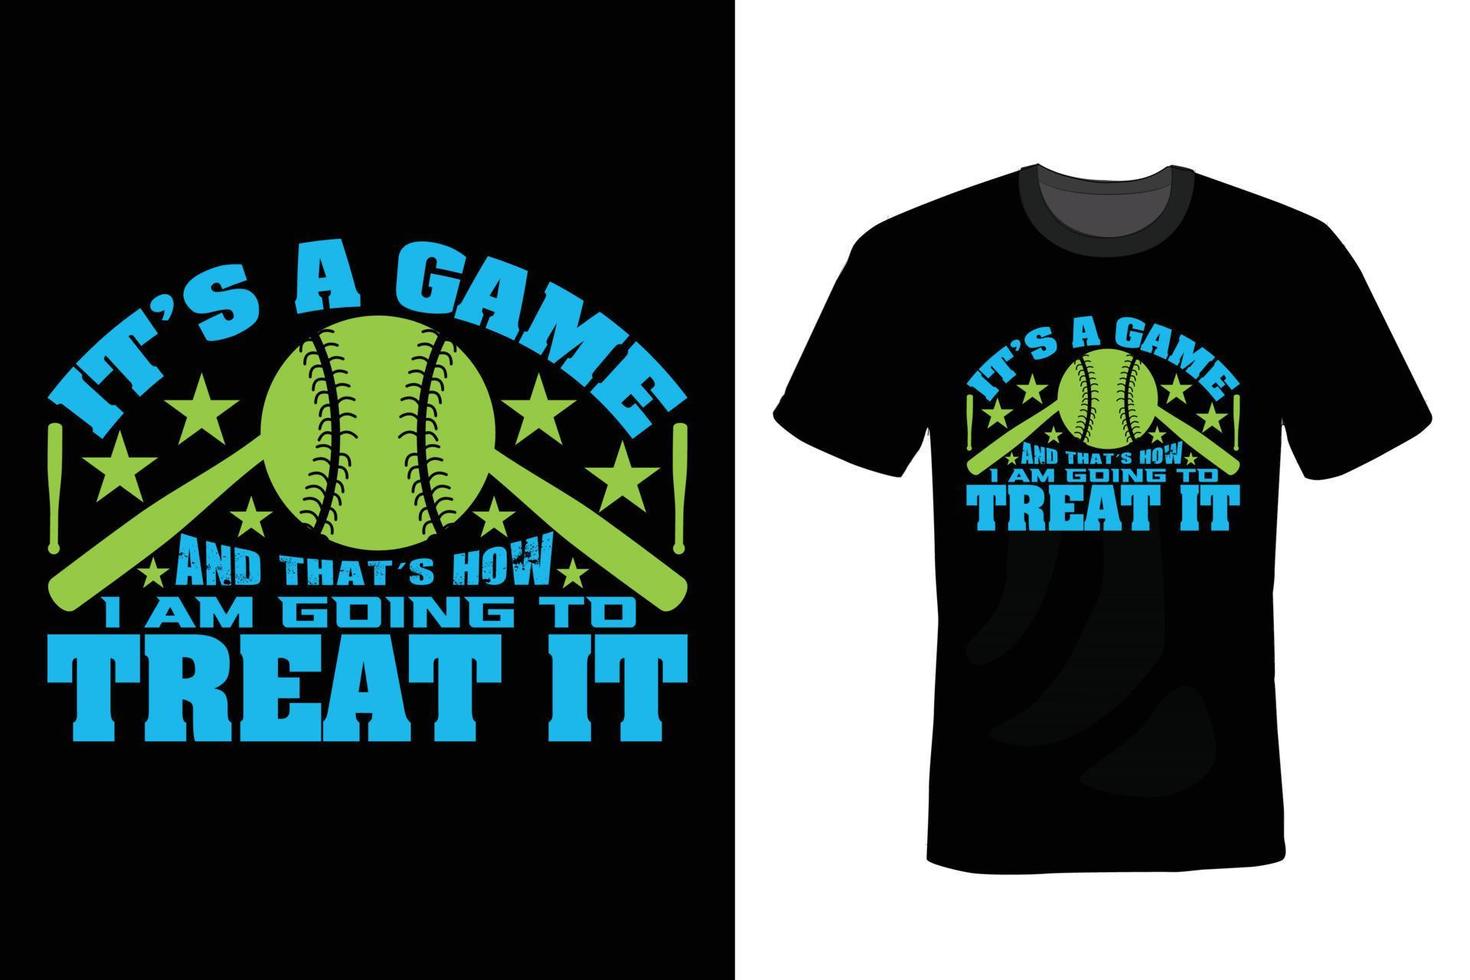 diseño de camiseta de béisbol, vintage, tipografía vector